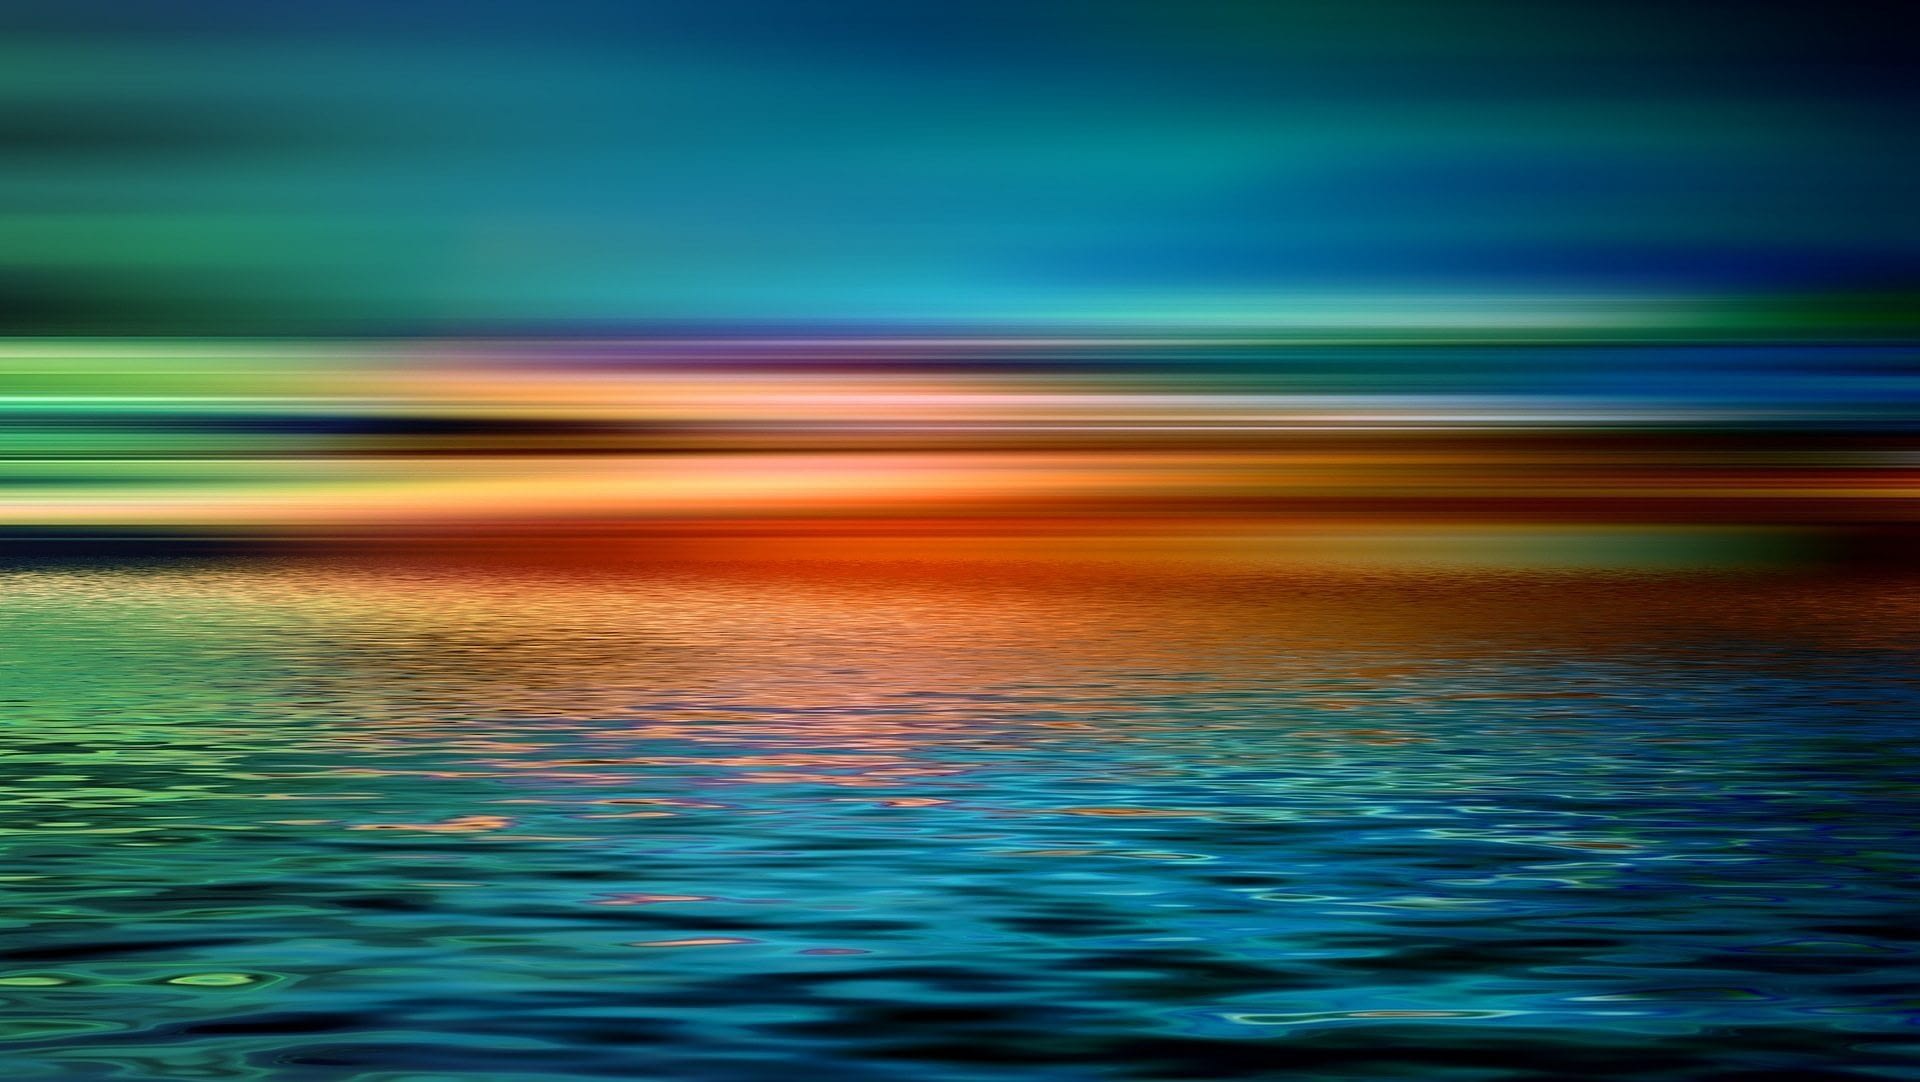 Image: Horizon over a still ocean